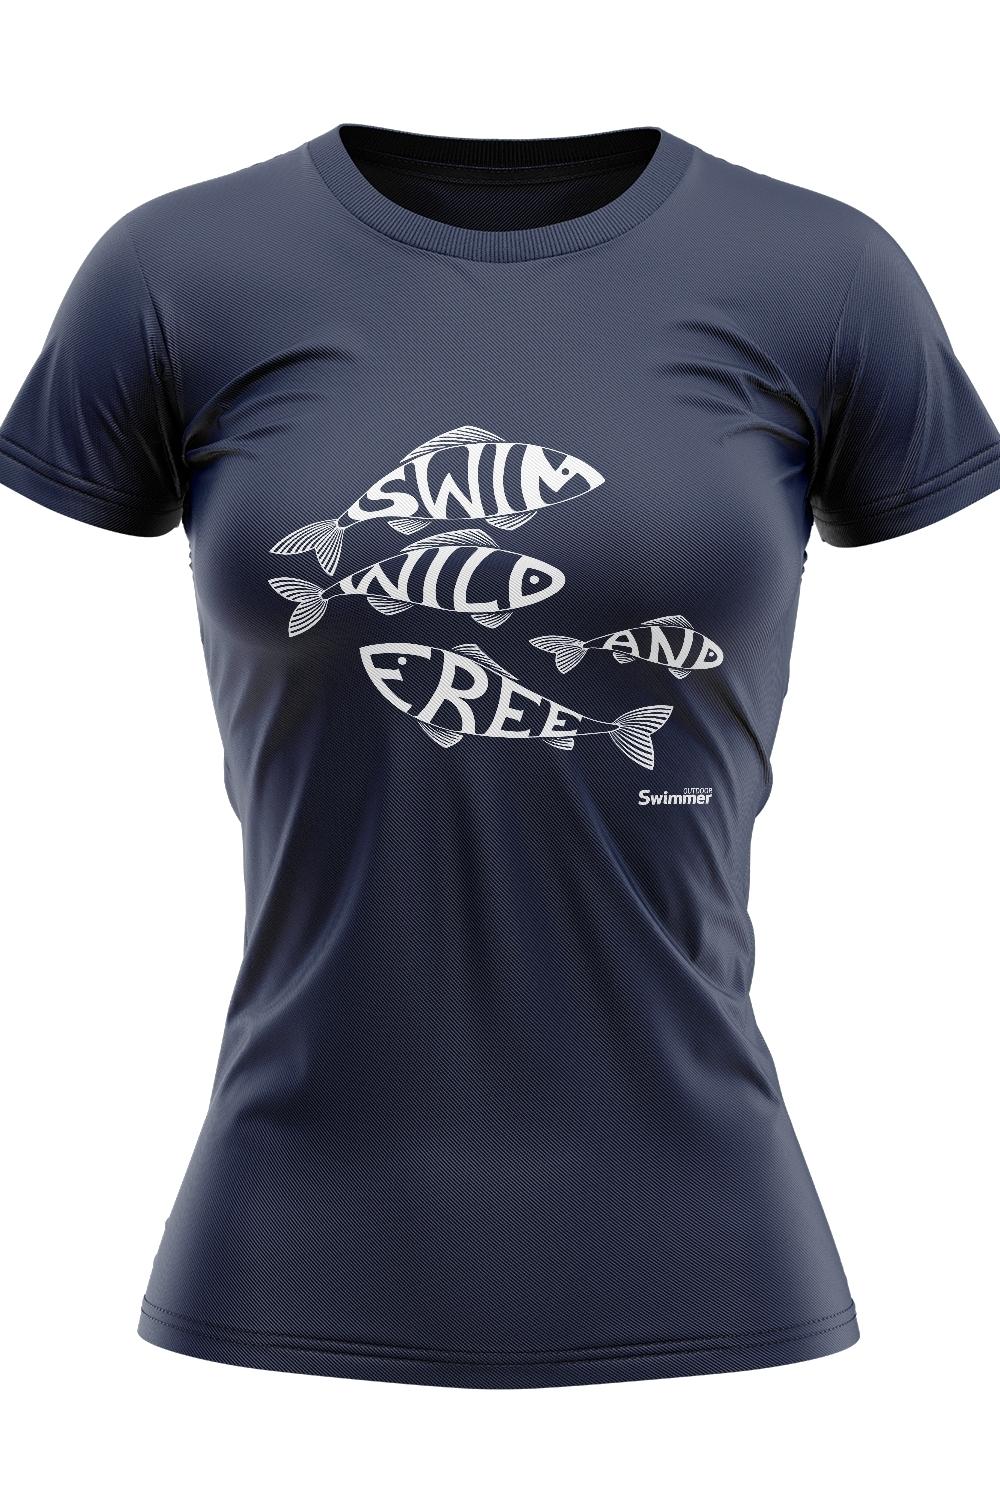 Swim Wild & Free Women's Fish Logo Organic Tee